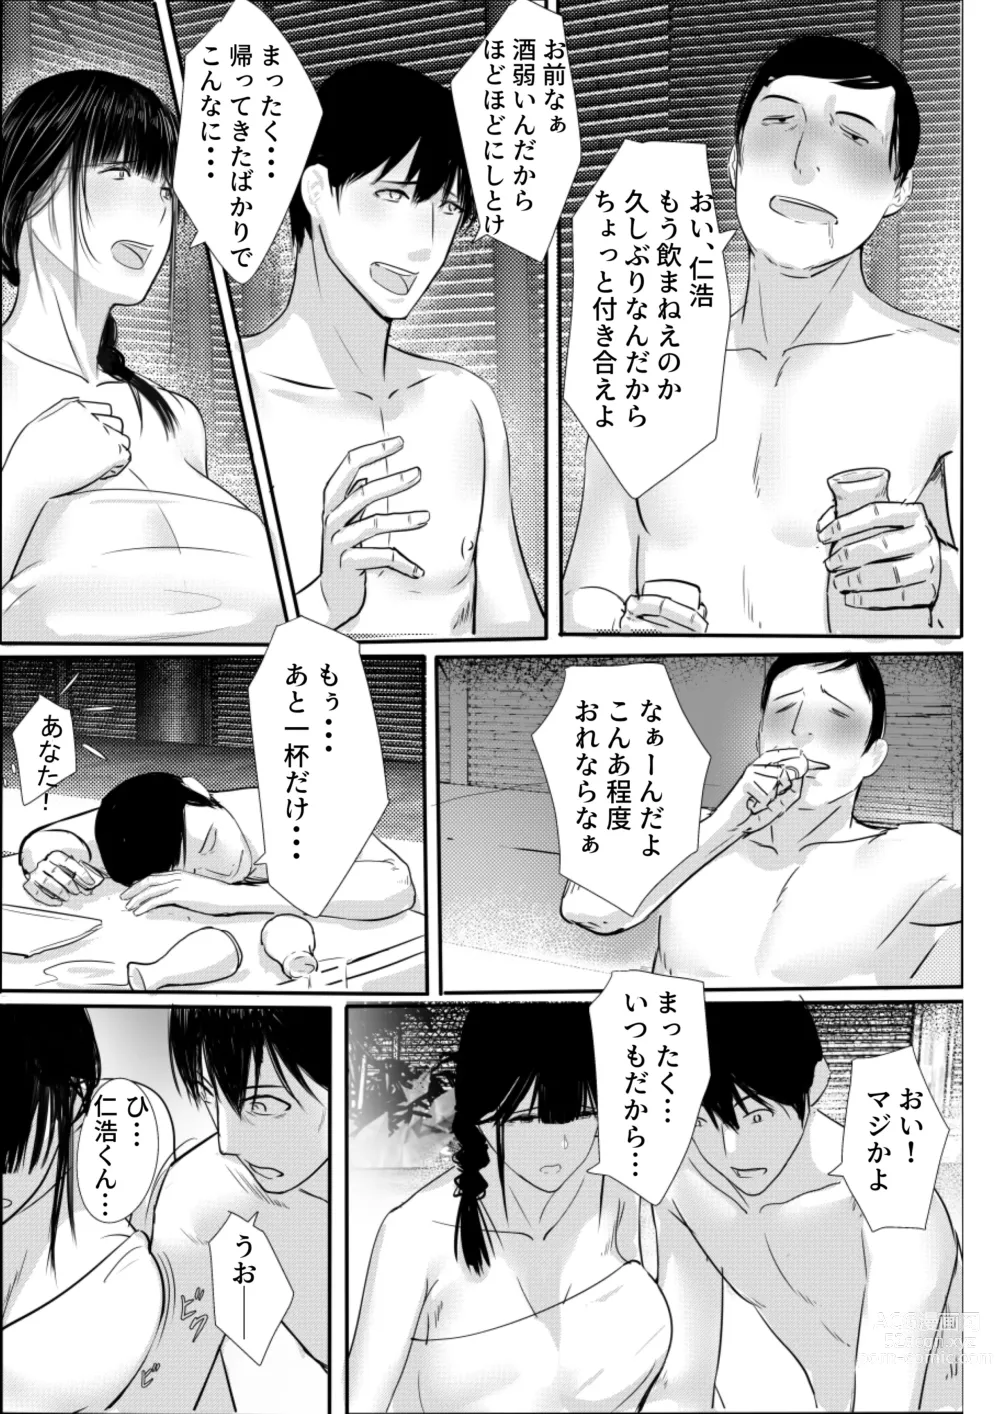 Page 11 of doujinshi Tanoshii Onsen Ryokan